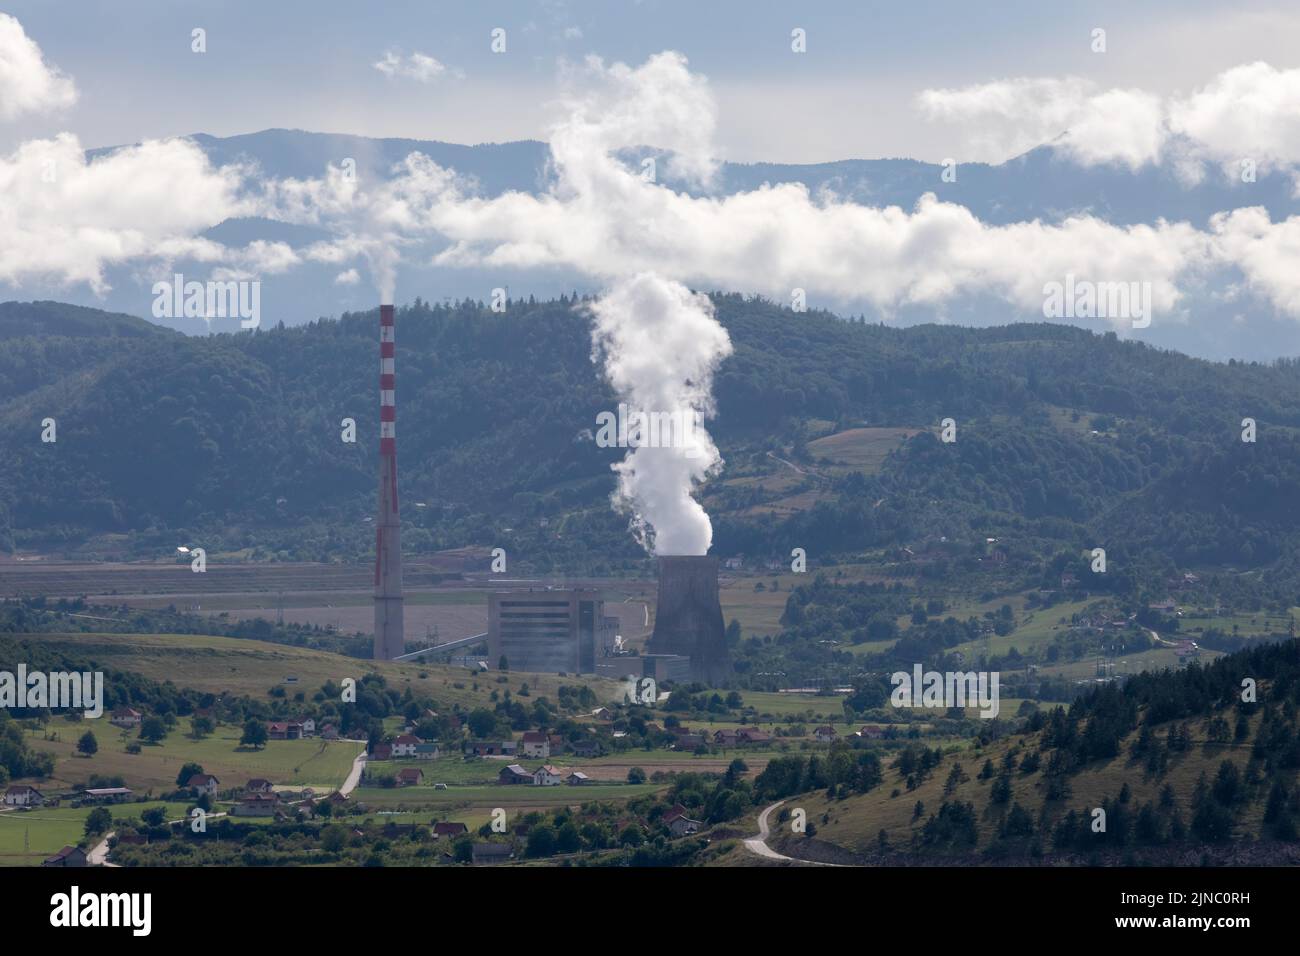 Une usine thermoélectrique la plus bigante 'Pljevlja' près de la ville de Pljevlja au Monténégro, avec de grandes cheminées dans un paysage rural Banque D'Images